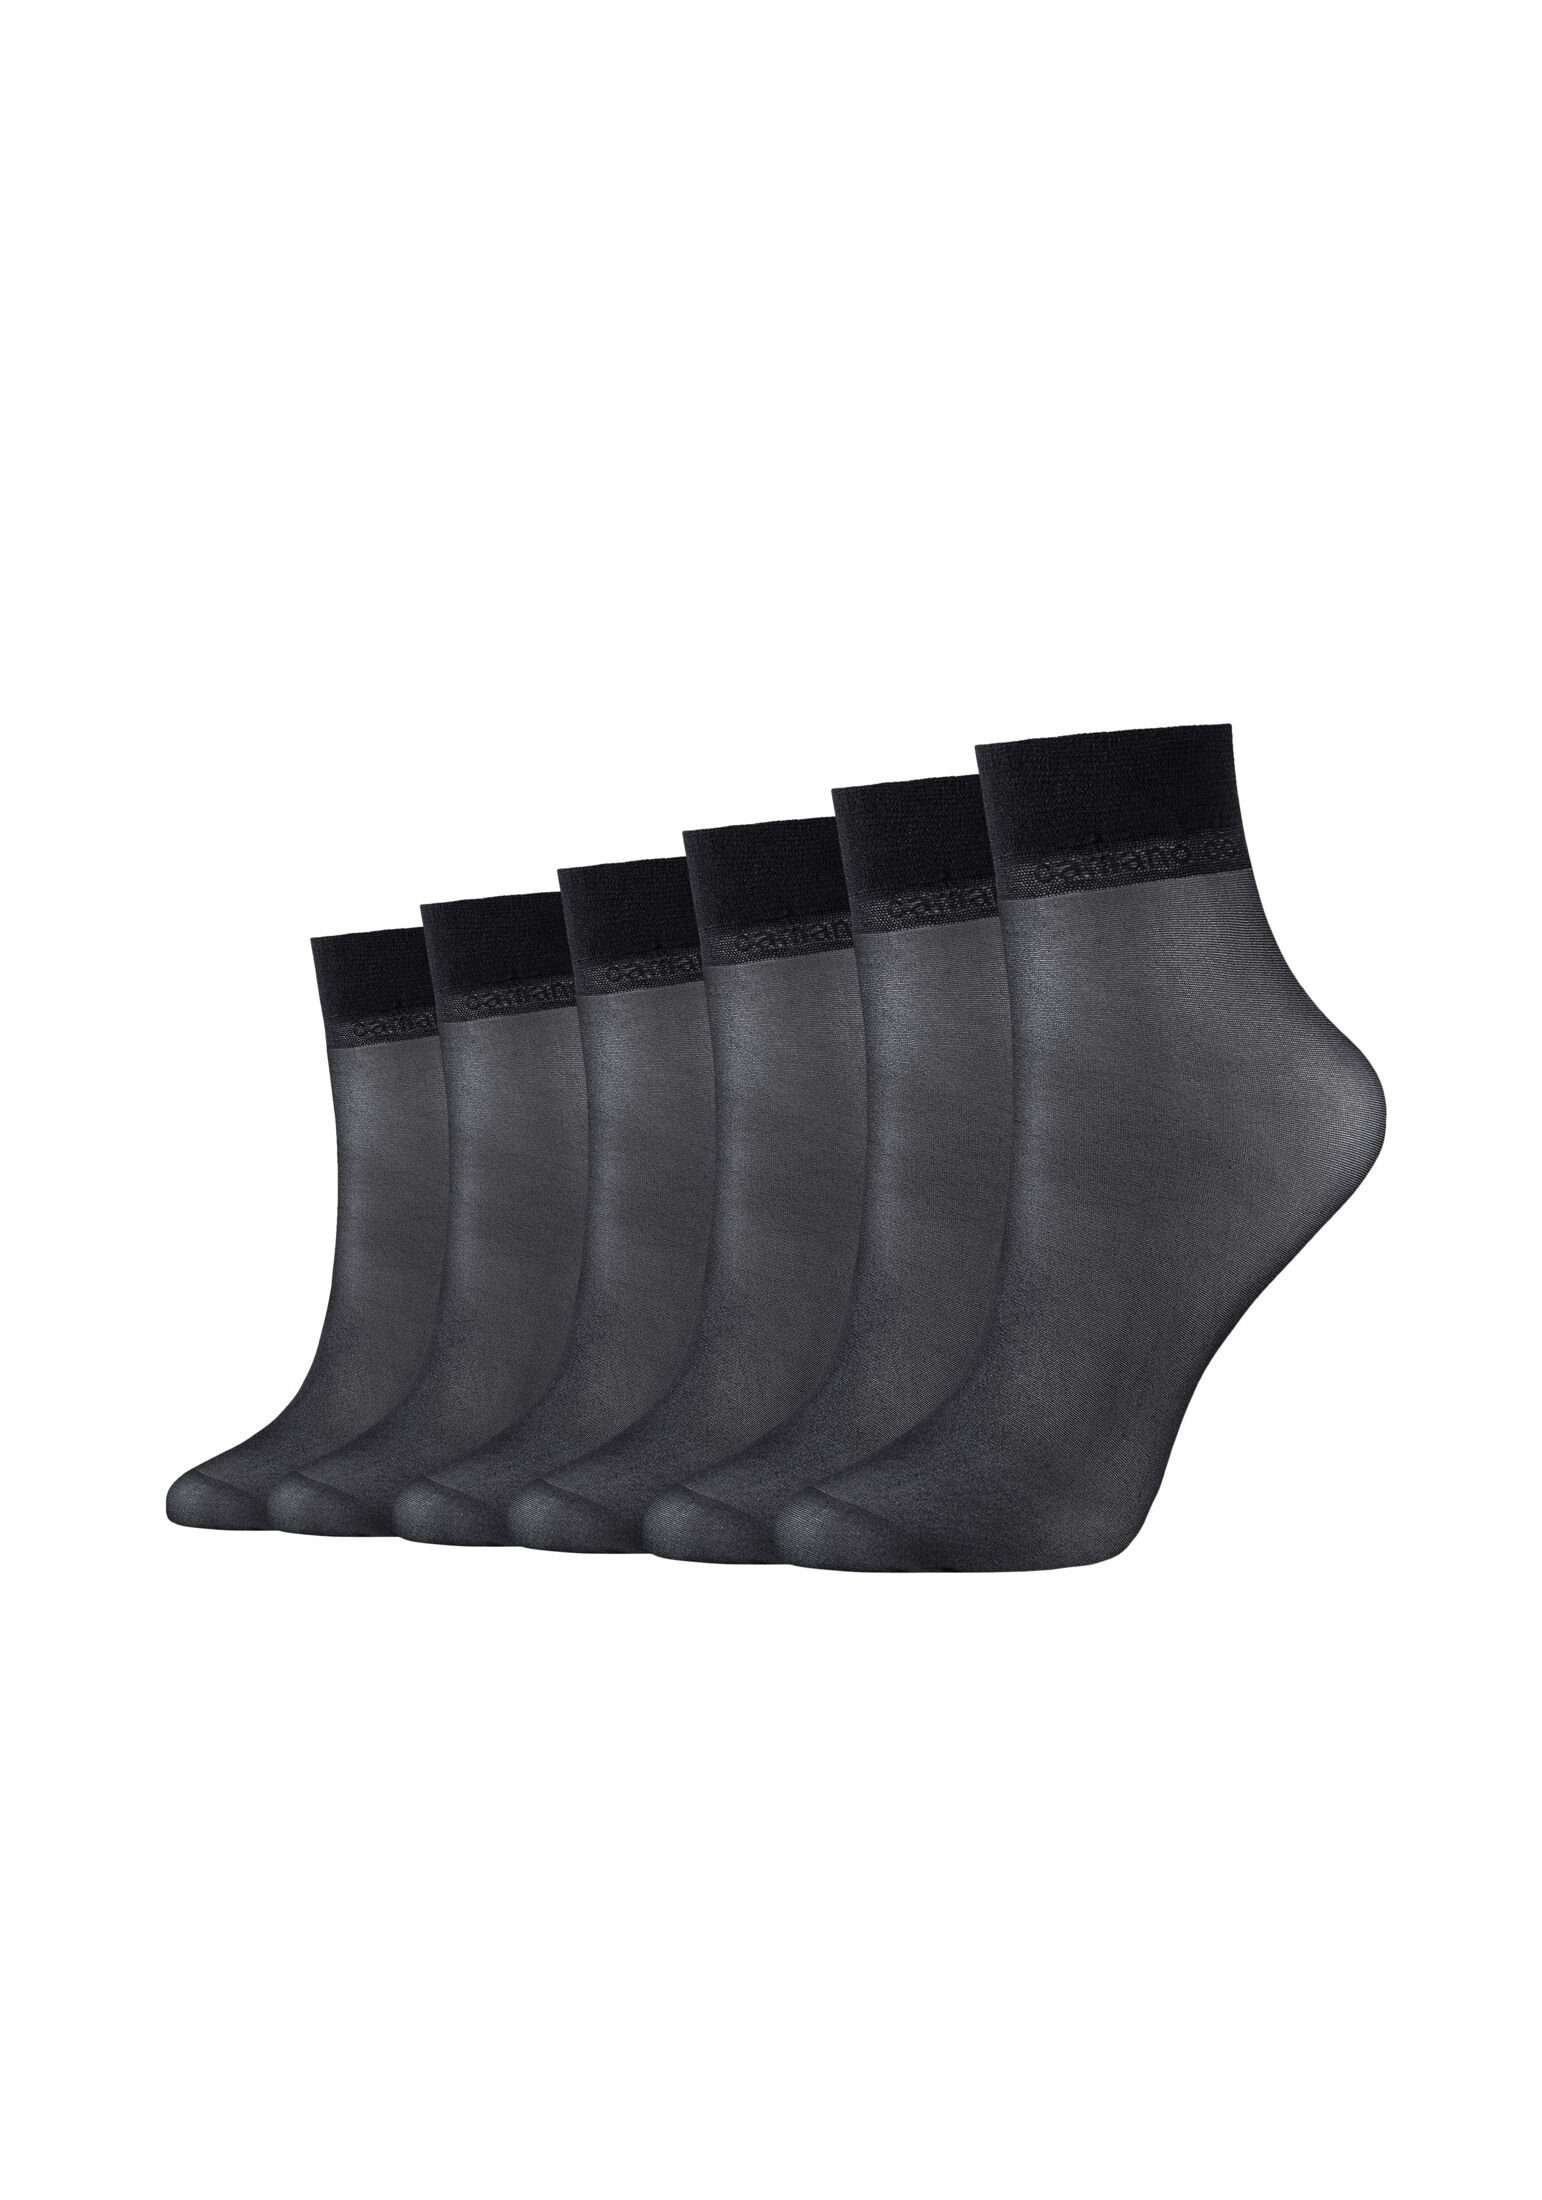 Camano Socken Socken black 6er Pack